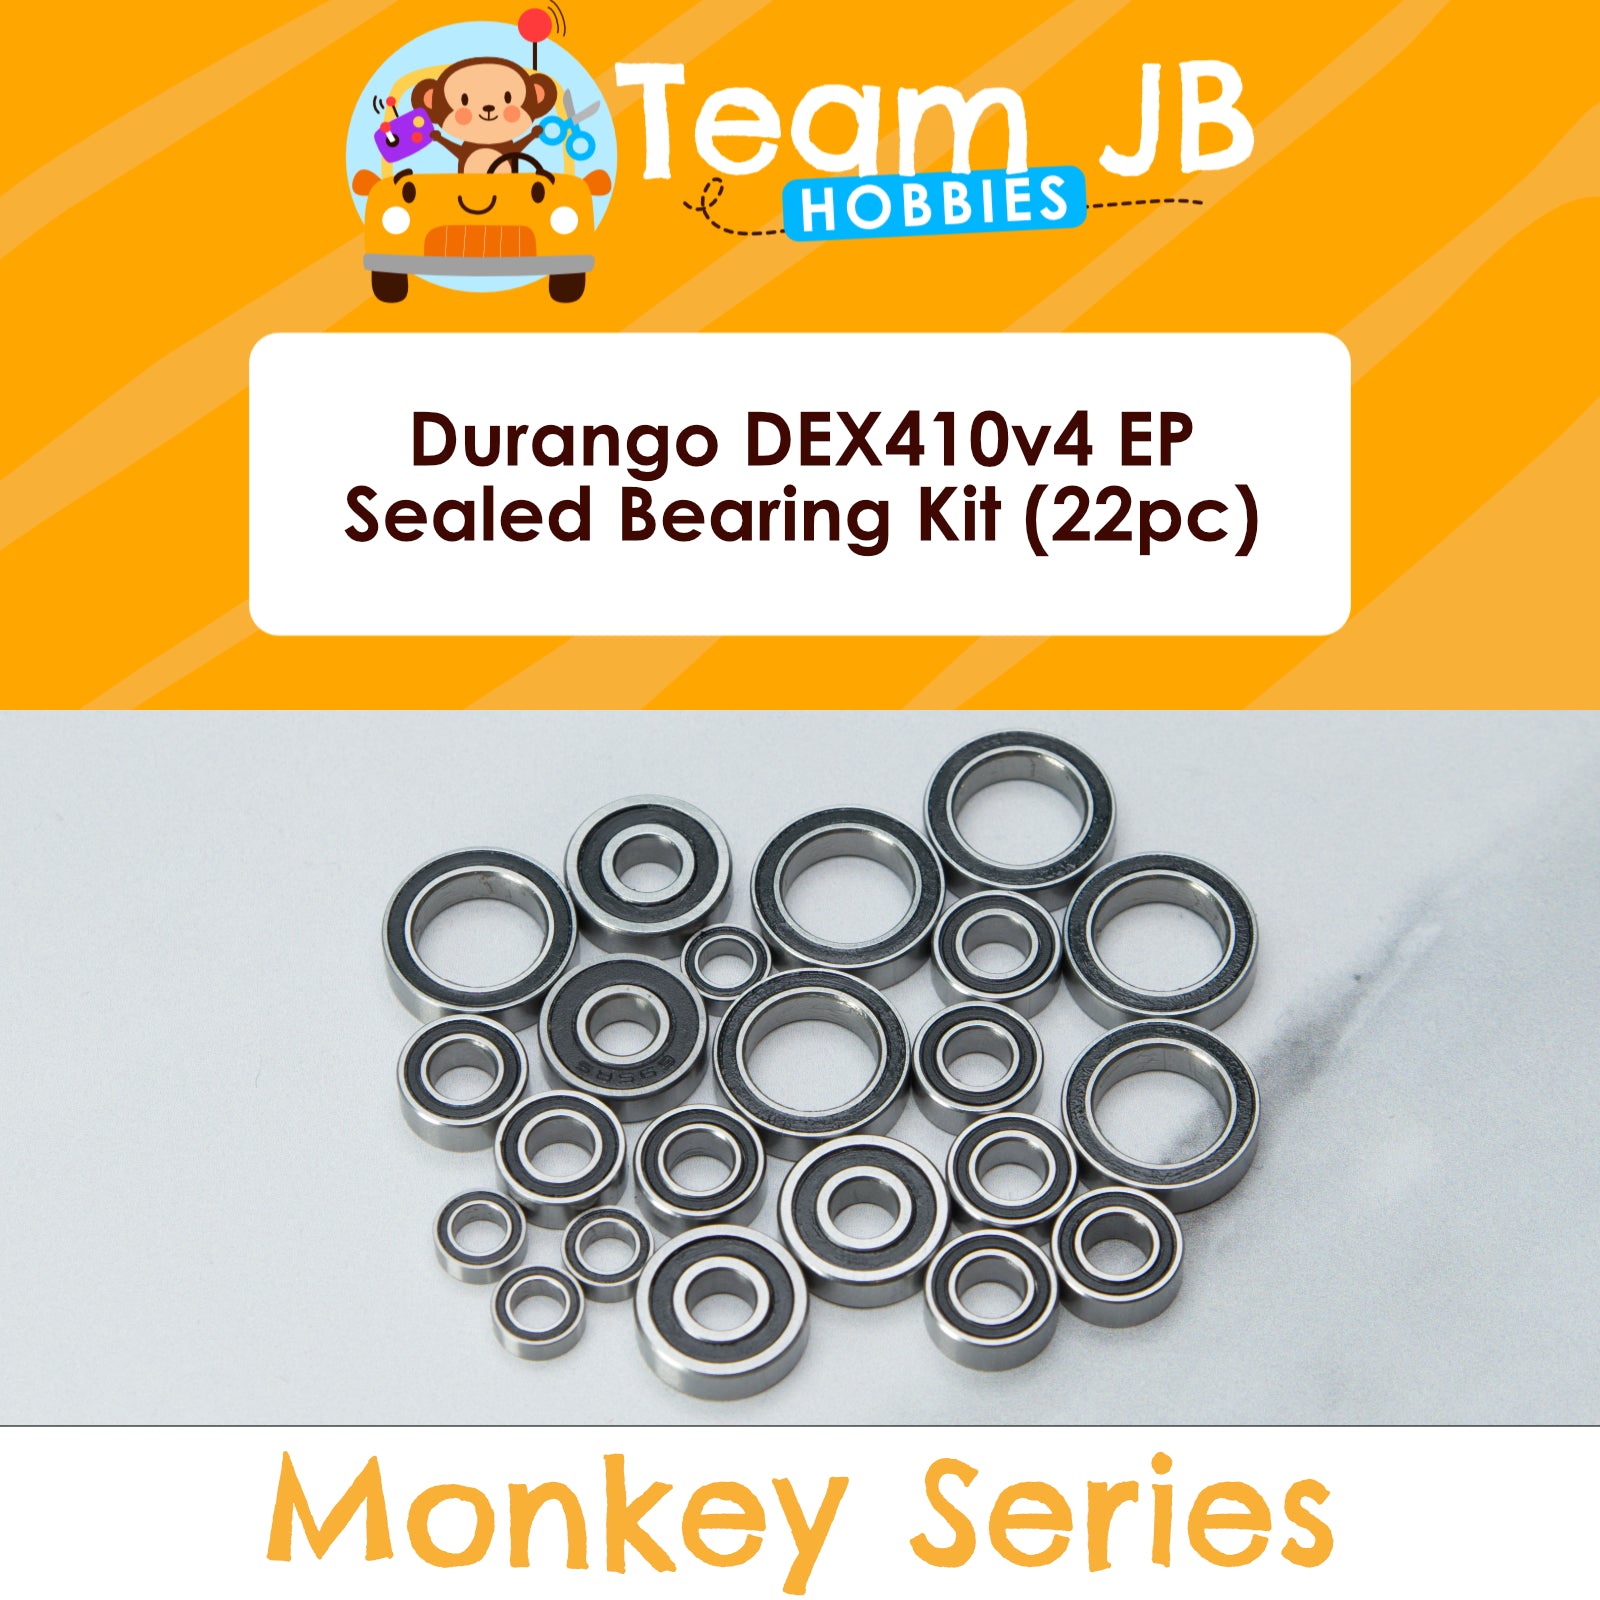 Durango DEX410v4 EP - Sealed Bearing Kit